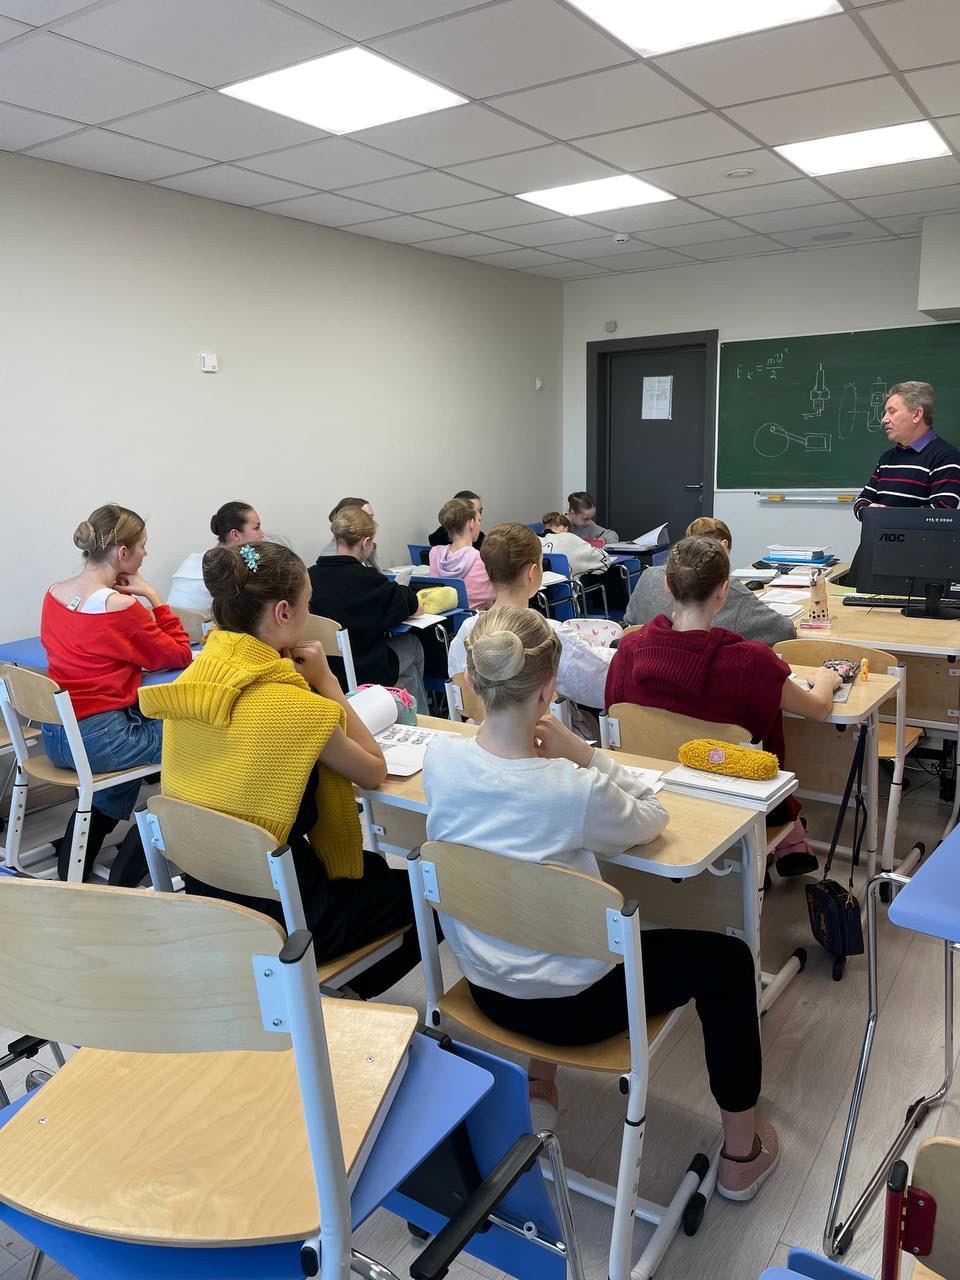 22 ноября в группе 4(8) класса Красногорского хореографического училища прошел открытый урок по физике.